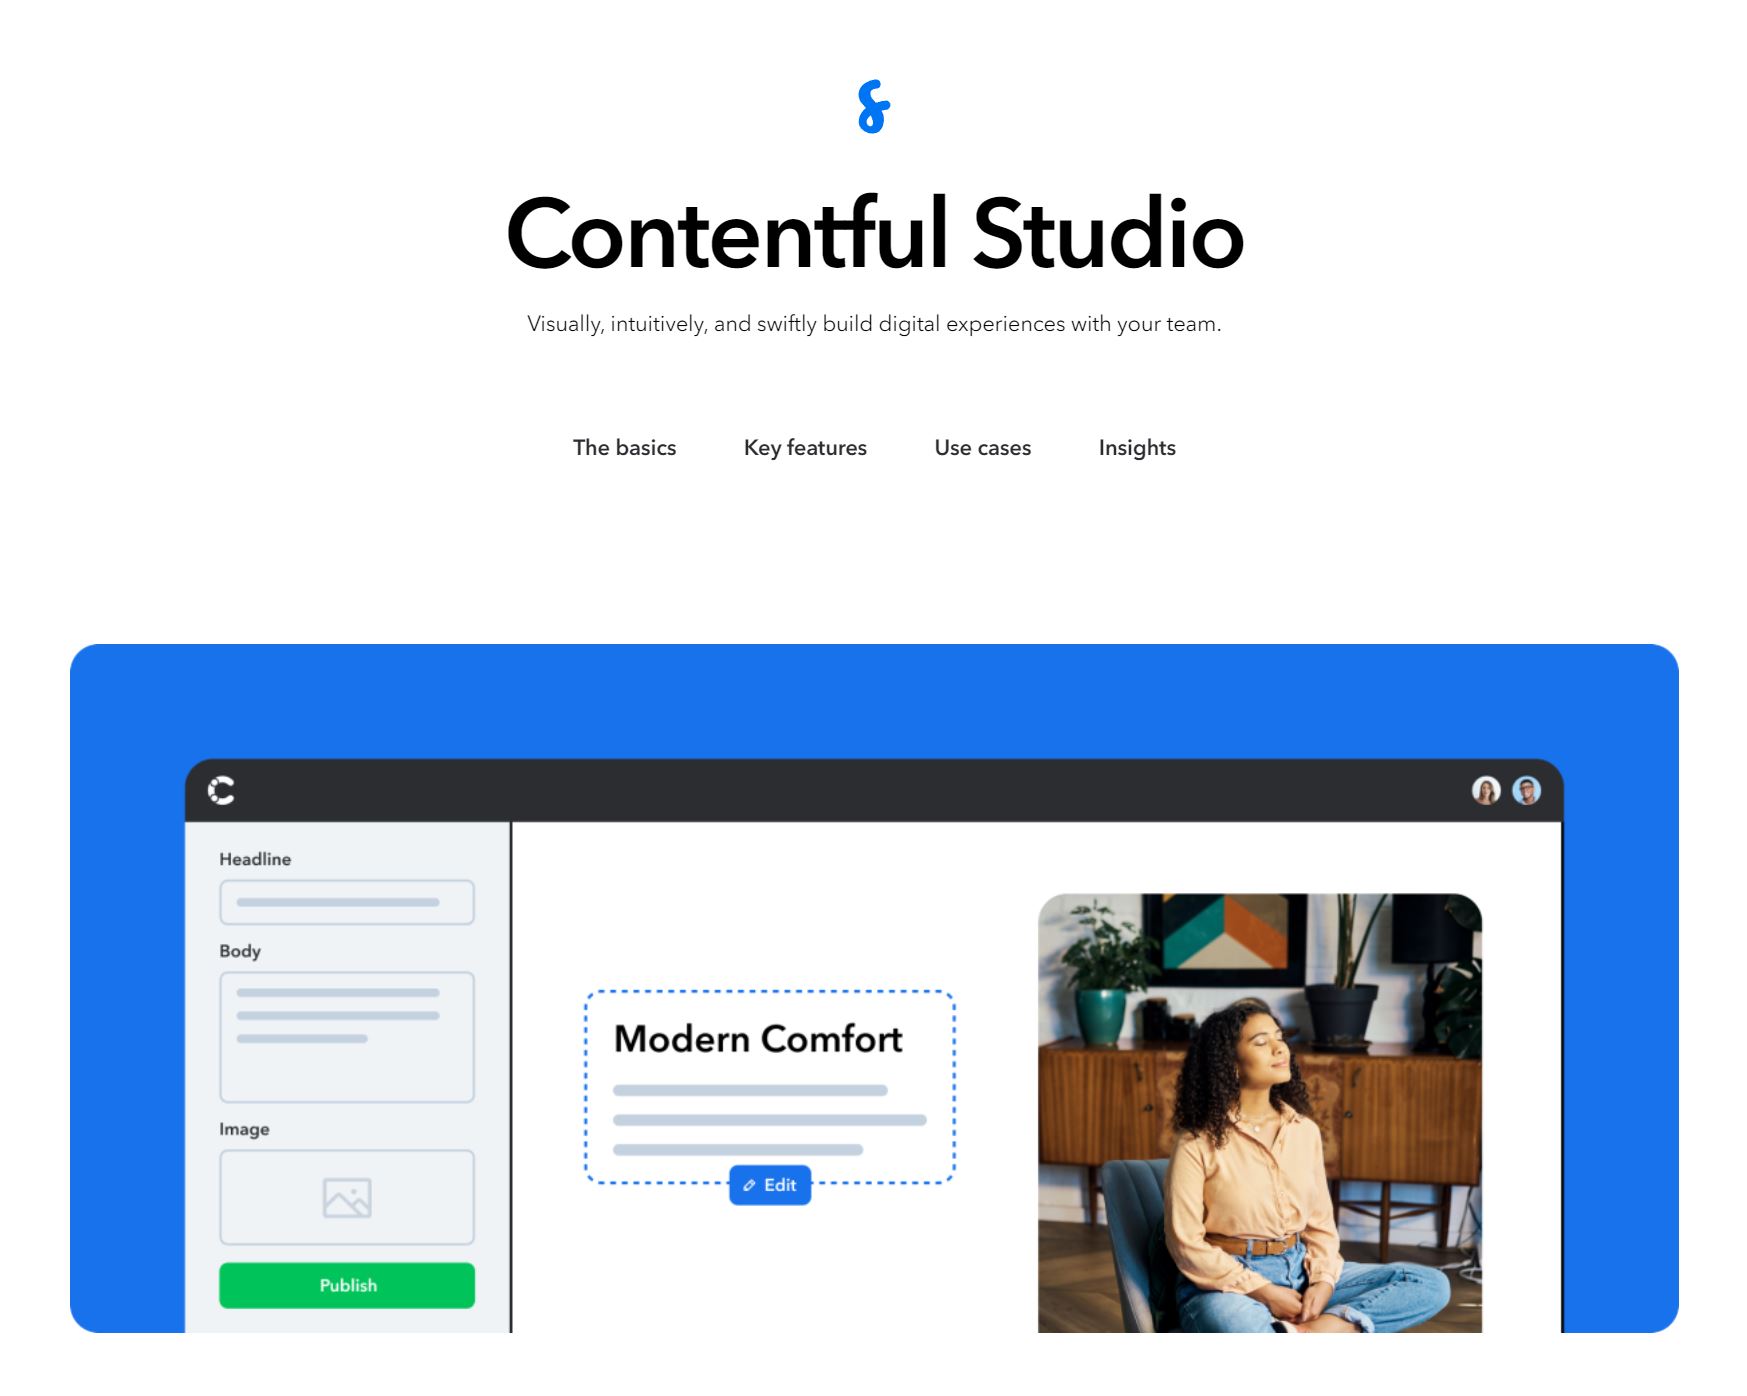 Contentful Studio revolutioniert die Art und Weise, wie kreative Teams arbeiten. Es ermöglicht Designern, Marketingspezialisten und Content-Erstellern, visuell ansprechende Inhalte zu gestalten, ohne auf technische Ressourcen angewiesen zu sein. 